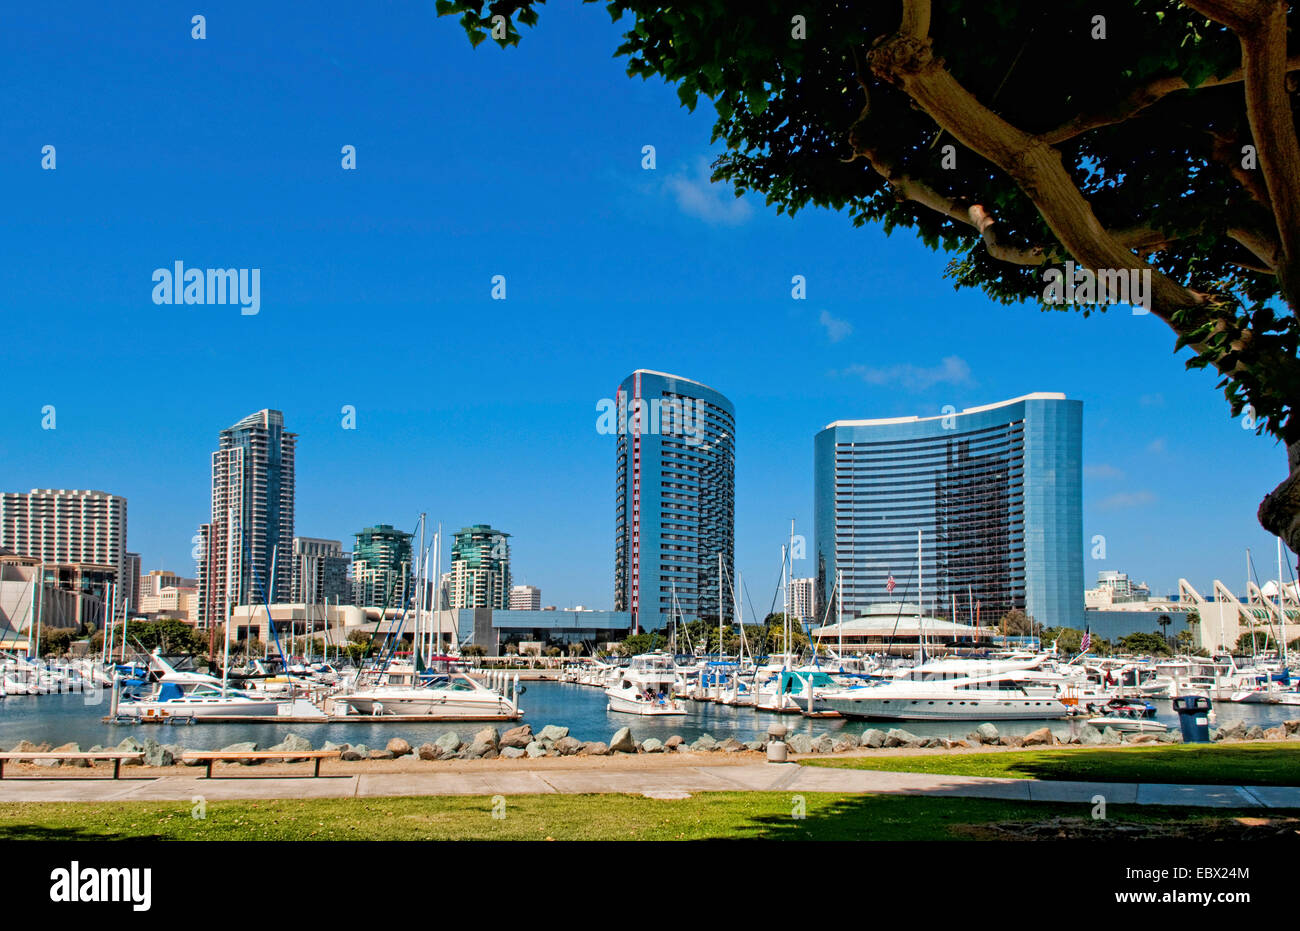 Il Seaport Village Marina nella Baia di San Diego con barche e navi in molo, Stati Uniti, California, San Diego Foto Stock